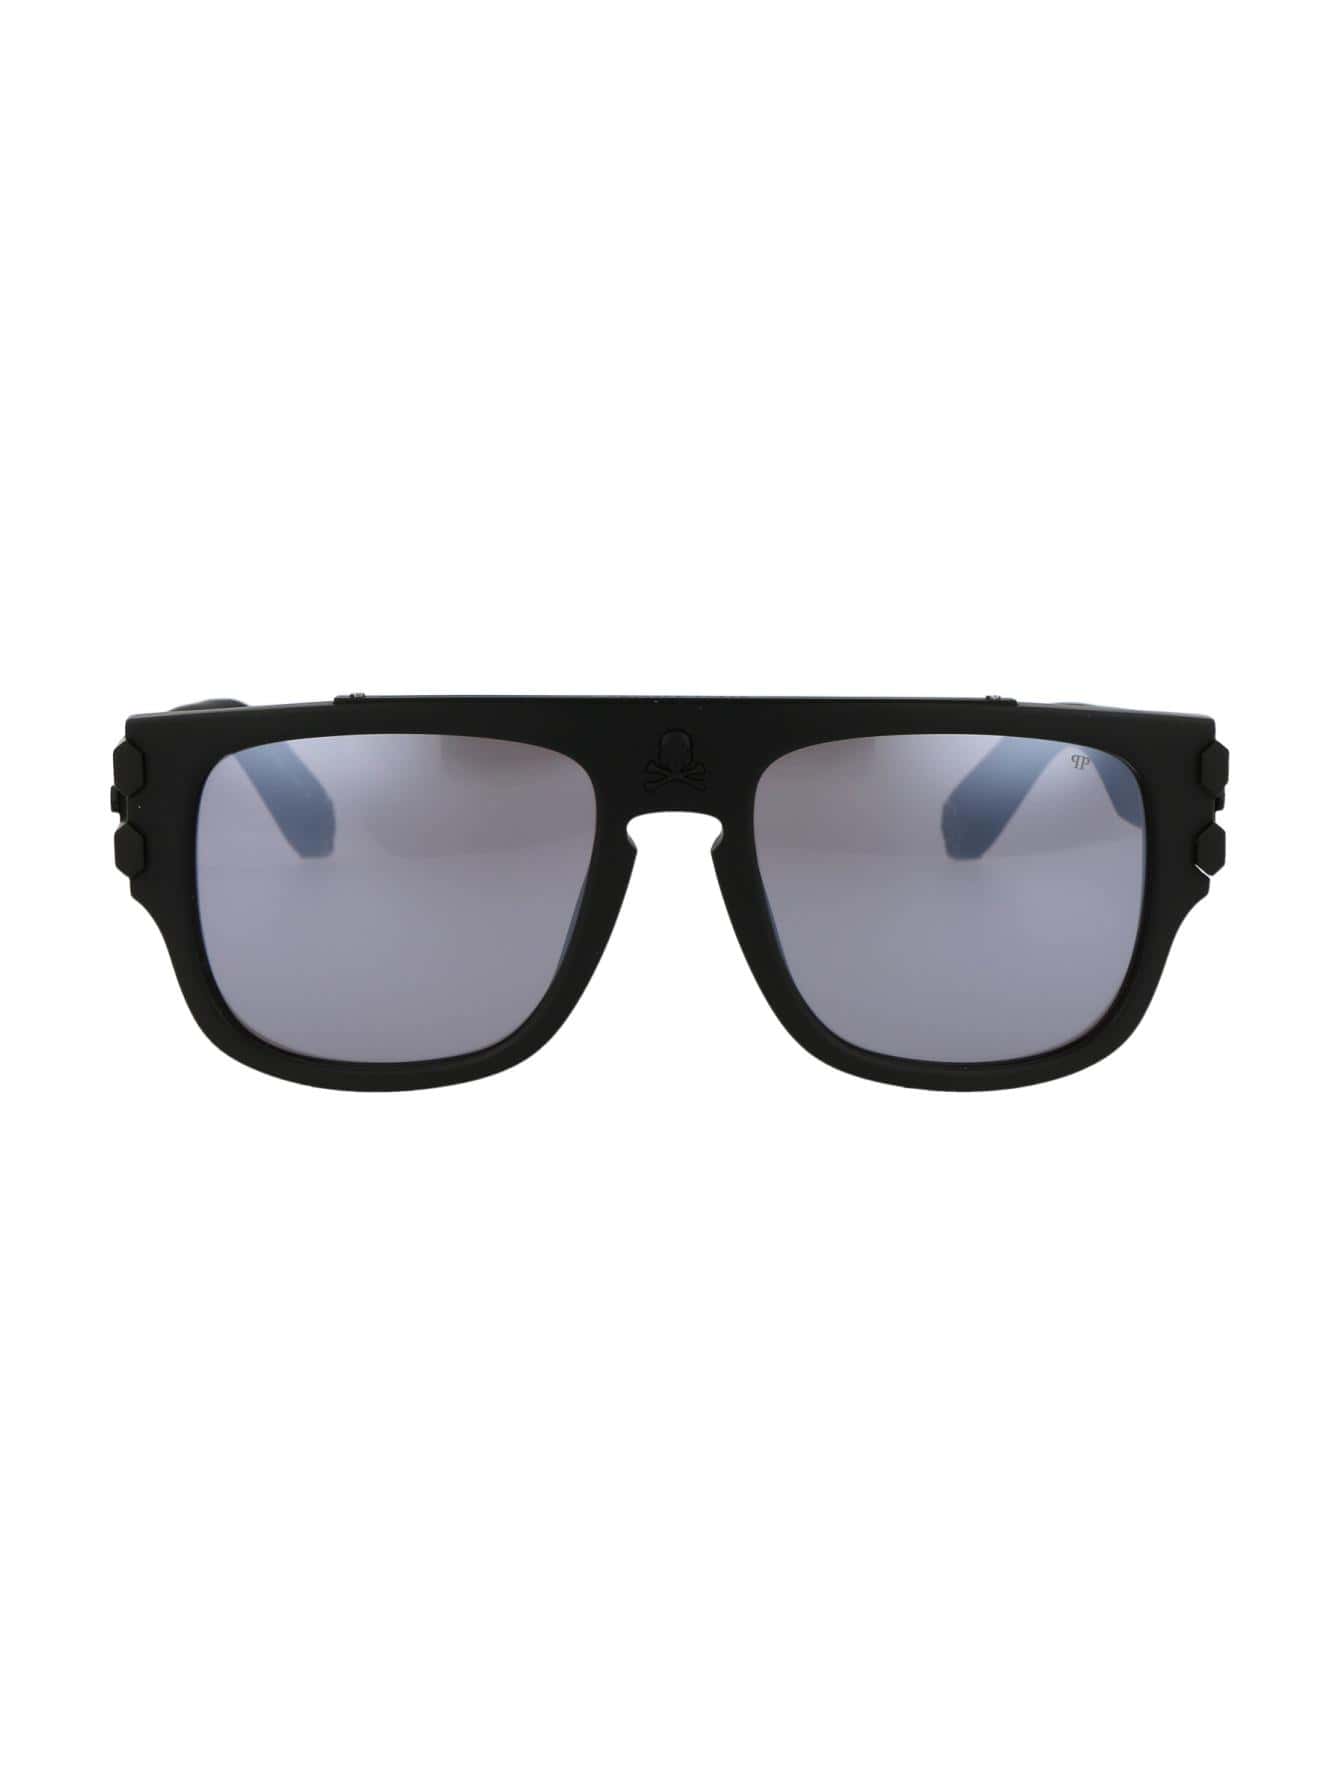 Мужские солнцезащитные очки Philipp Plein DECOR SPP011W703M, многоцветный